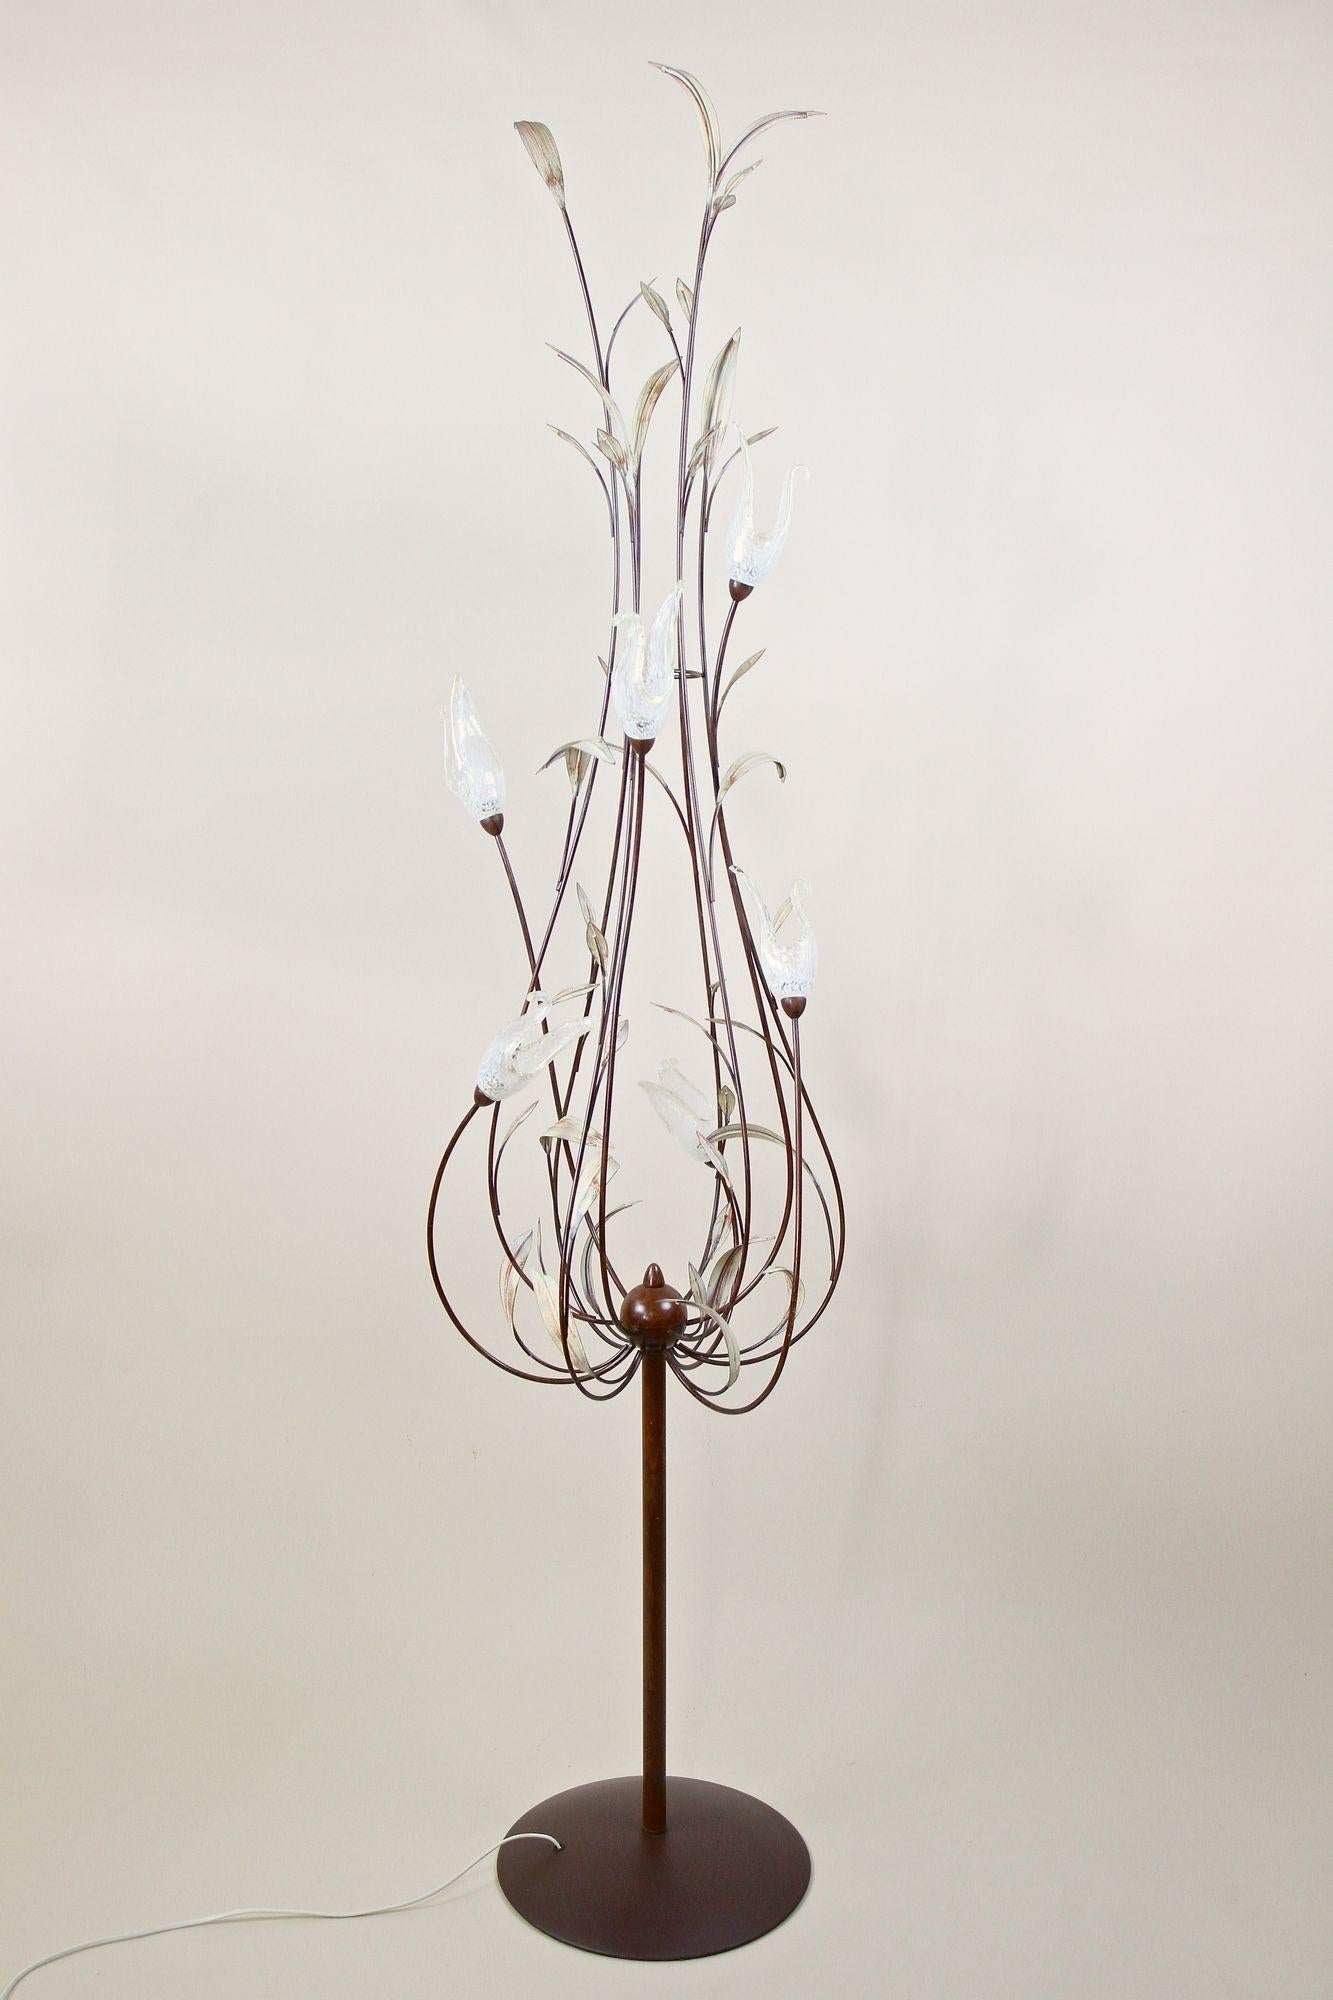 Magique lampadaire de Murano du milieu du siècle dernier, datant de la période autour de 1970 en Italie. Un extraordinaire lampadaire en métal, de forme absolument fantastique, présentant de magnifiques feuilles de roseau peintes à la main. Les six